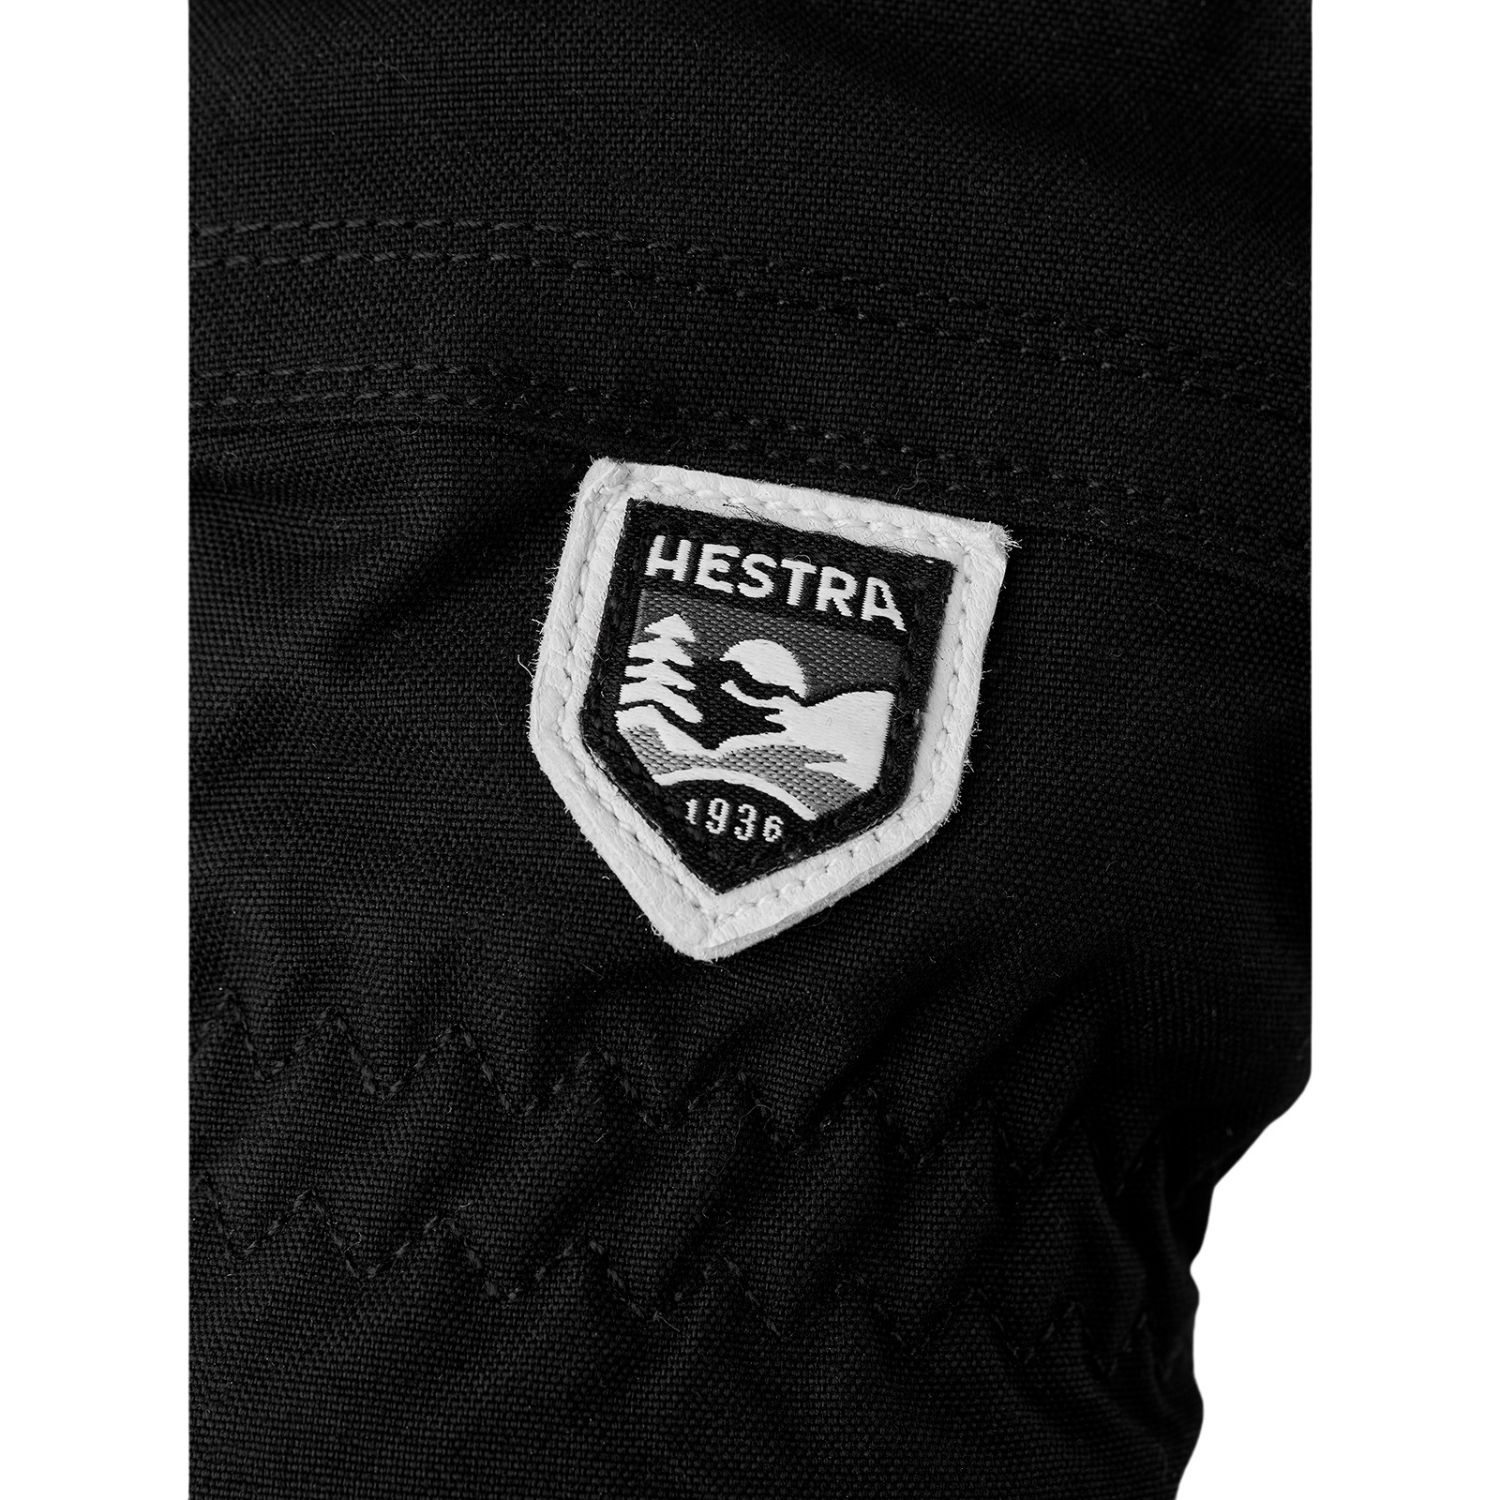 Hestra Heli Ski gants de ski, femmes, noir